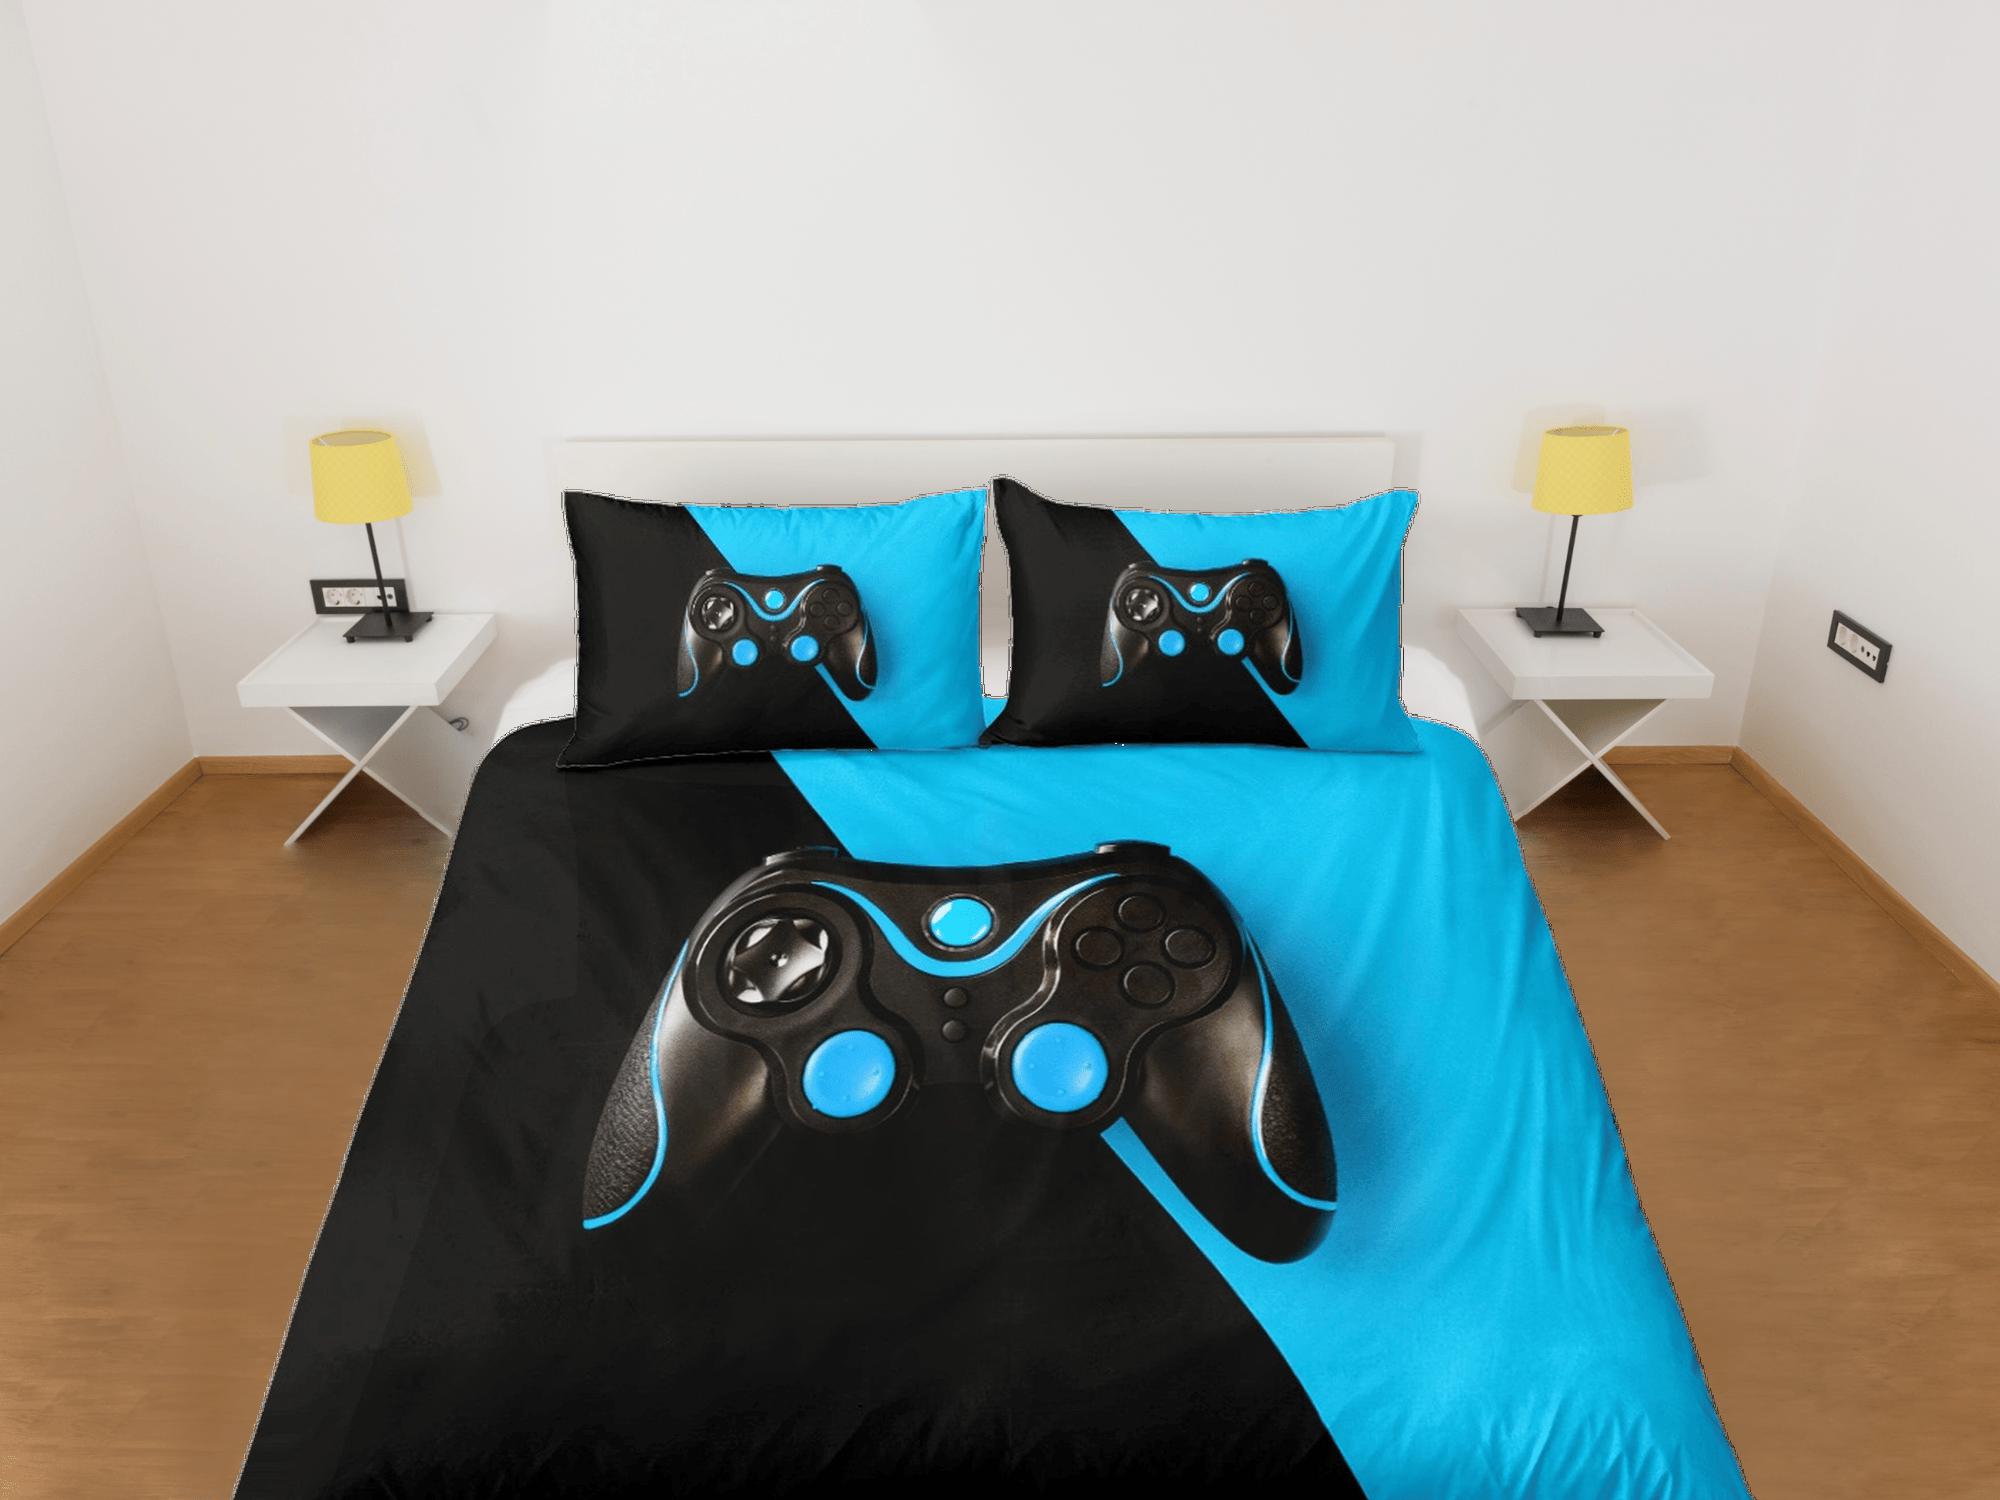 daintyduvet Black and blue gamer bedding duvet cover, video gamer boyfriend gift bedding set full king queen twin, boys bedroom, college dorm bedding